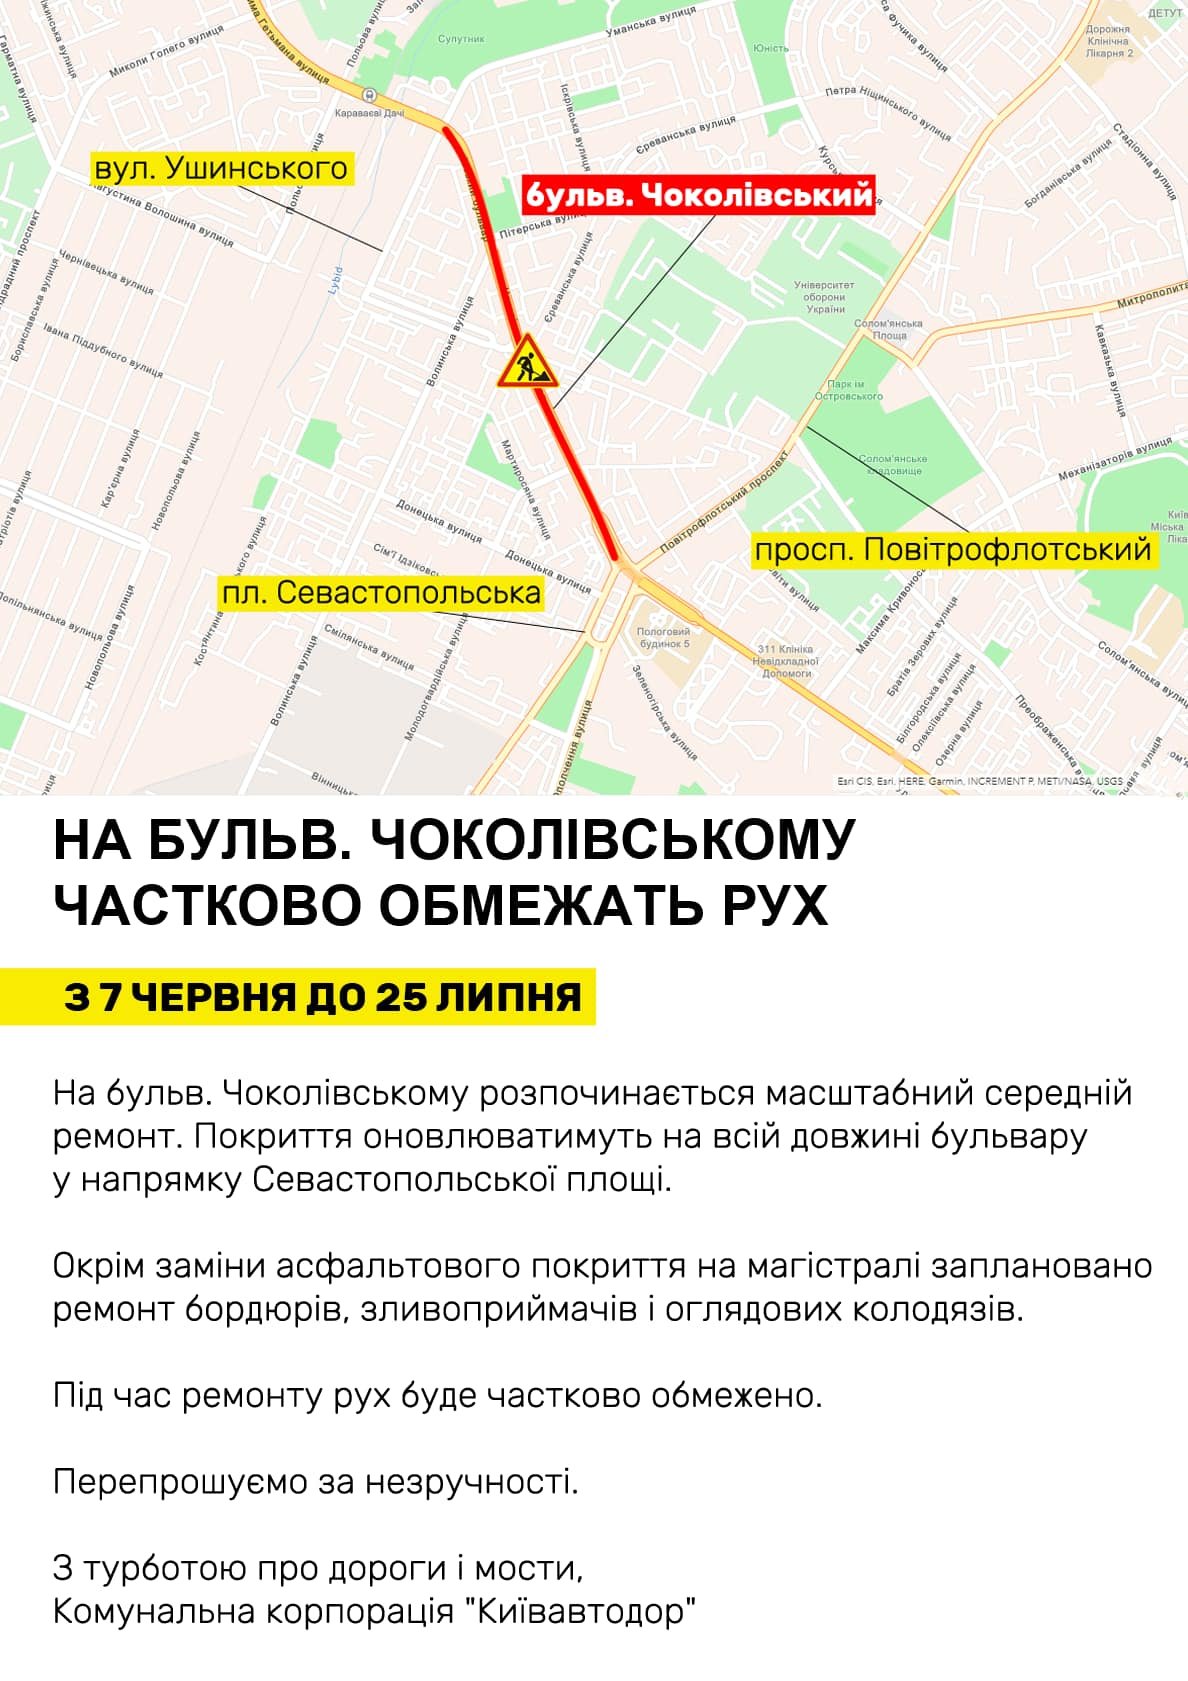 Не проедешь, но пройдешь: в Киеве для транспорта закроют Чоколовский бульвар